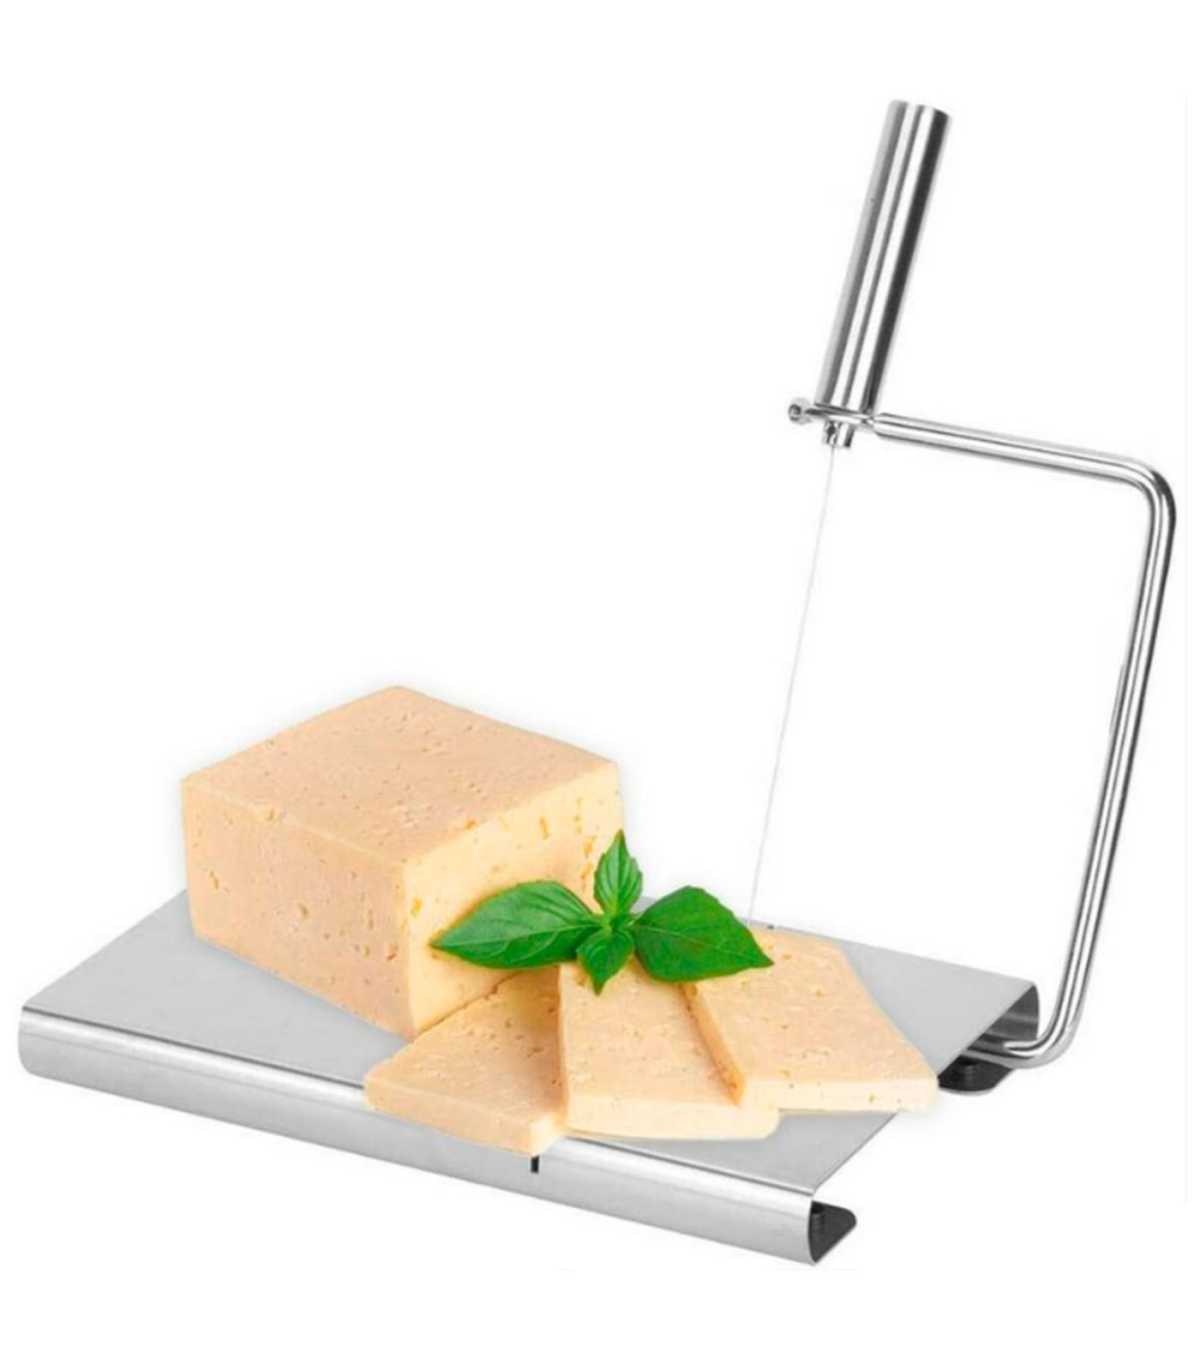 https://tradineur.com/83329-superlarge_default/tradineur--cortador-de-queso-manual-guillotina-de-acero-inoxidable-incluye-5-hilos-de-repuesto-corte-ajustable-cortar-mantequill.jpg